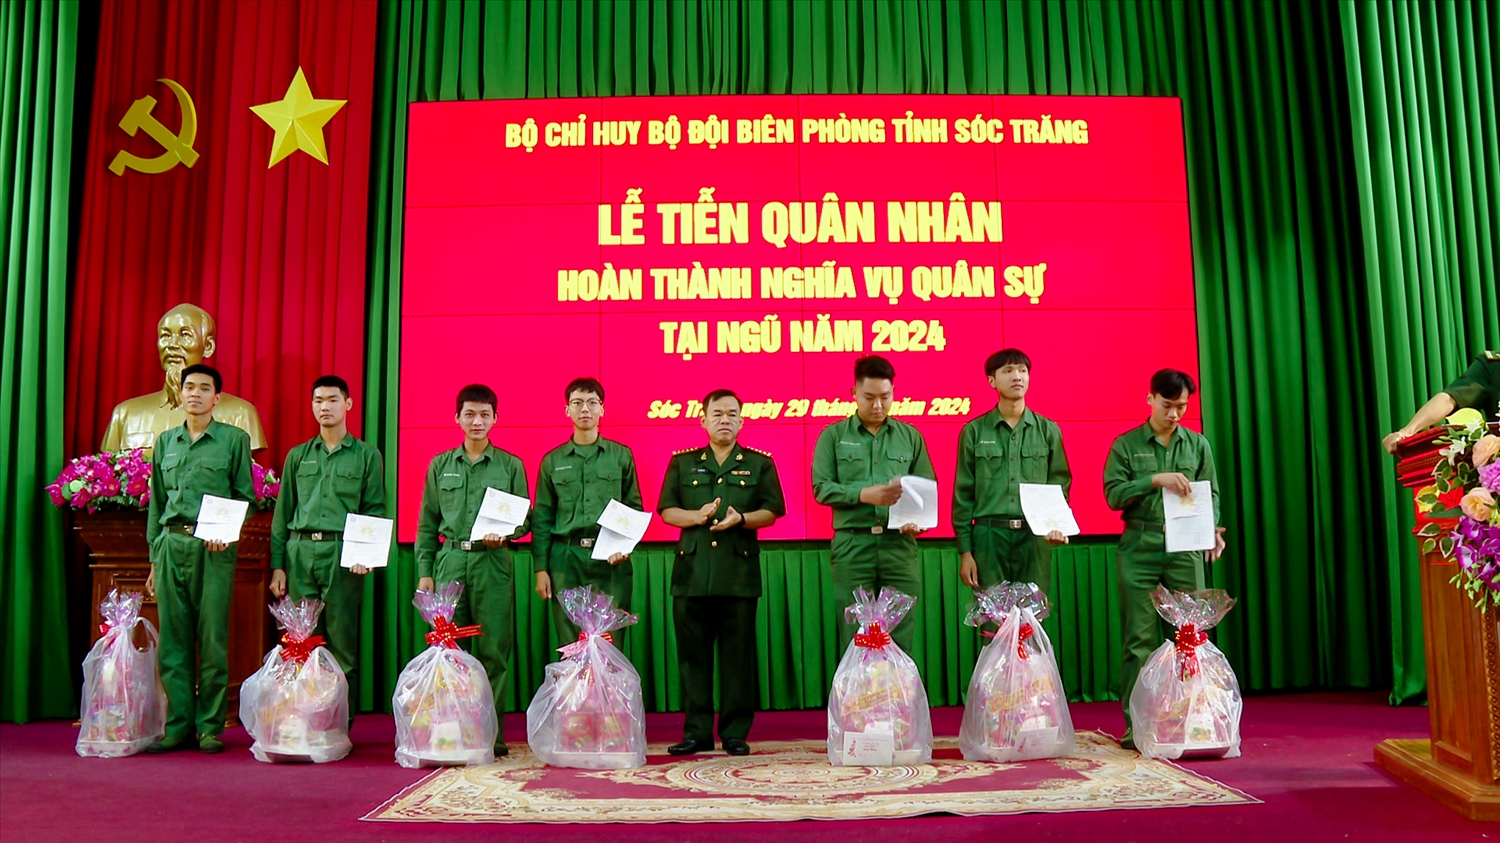  Đại tá Lê Hồng Hà, Phó chỉ huy trưởng, Tham mưu trưởng Bộ đội Biên phòng Sóc Trăng trao quyết định xuất ngũ và tặng quà cho các quân nhân